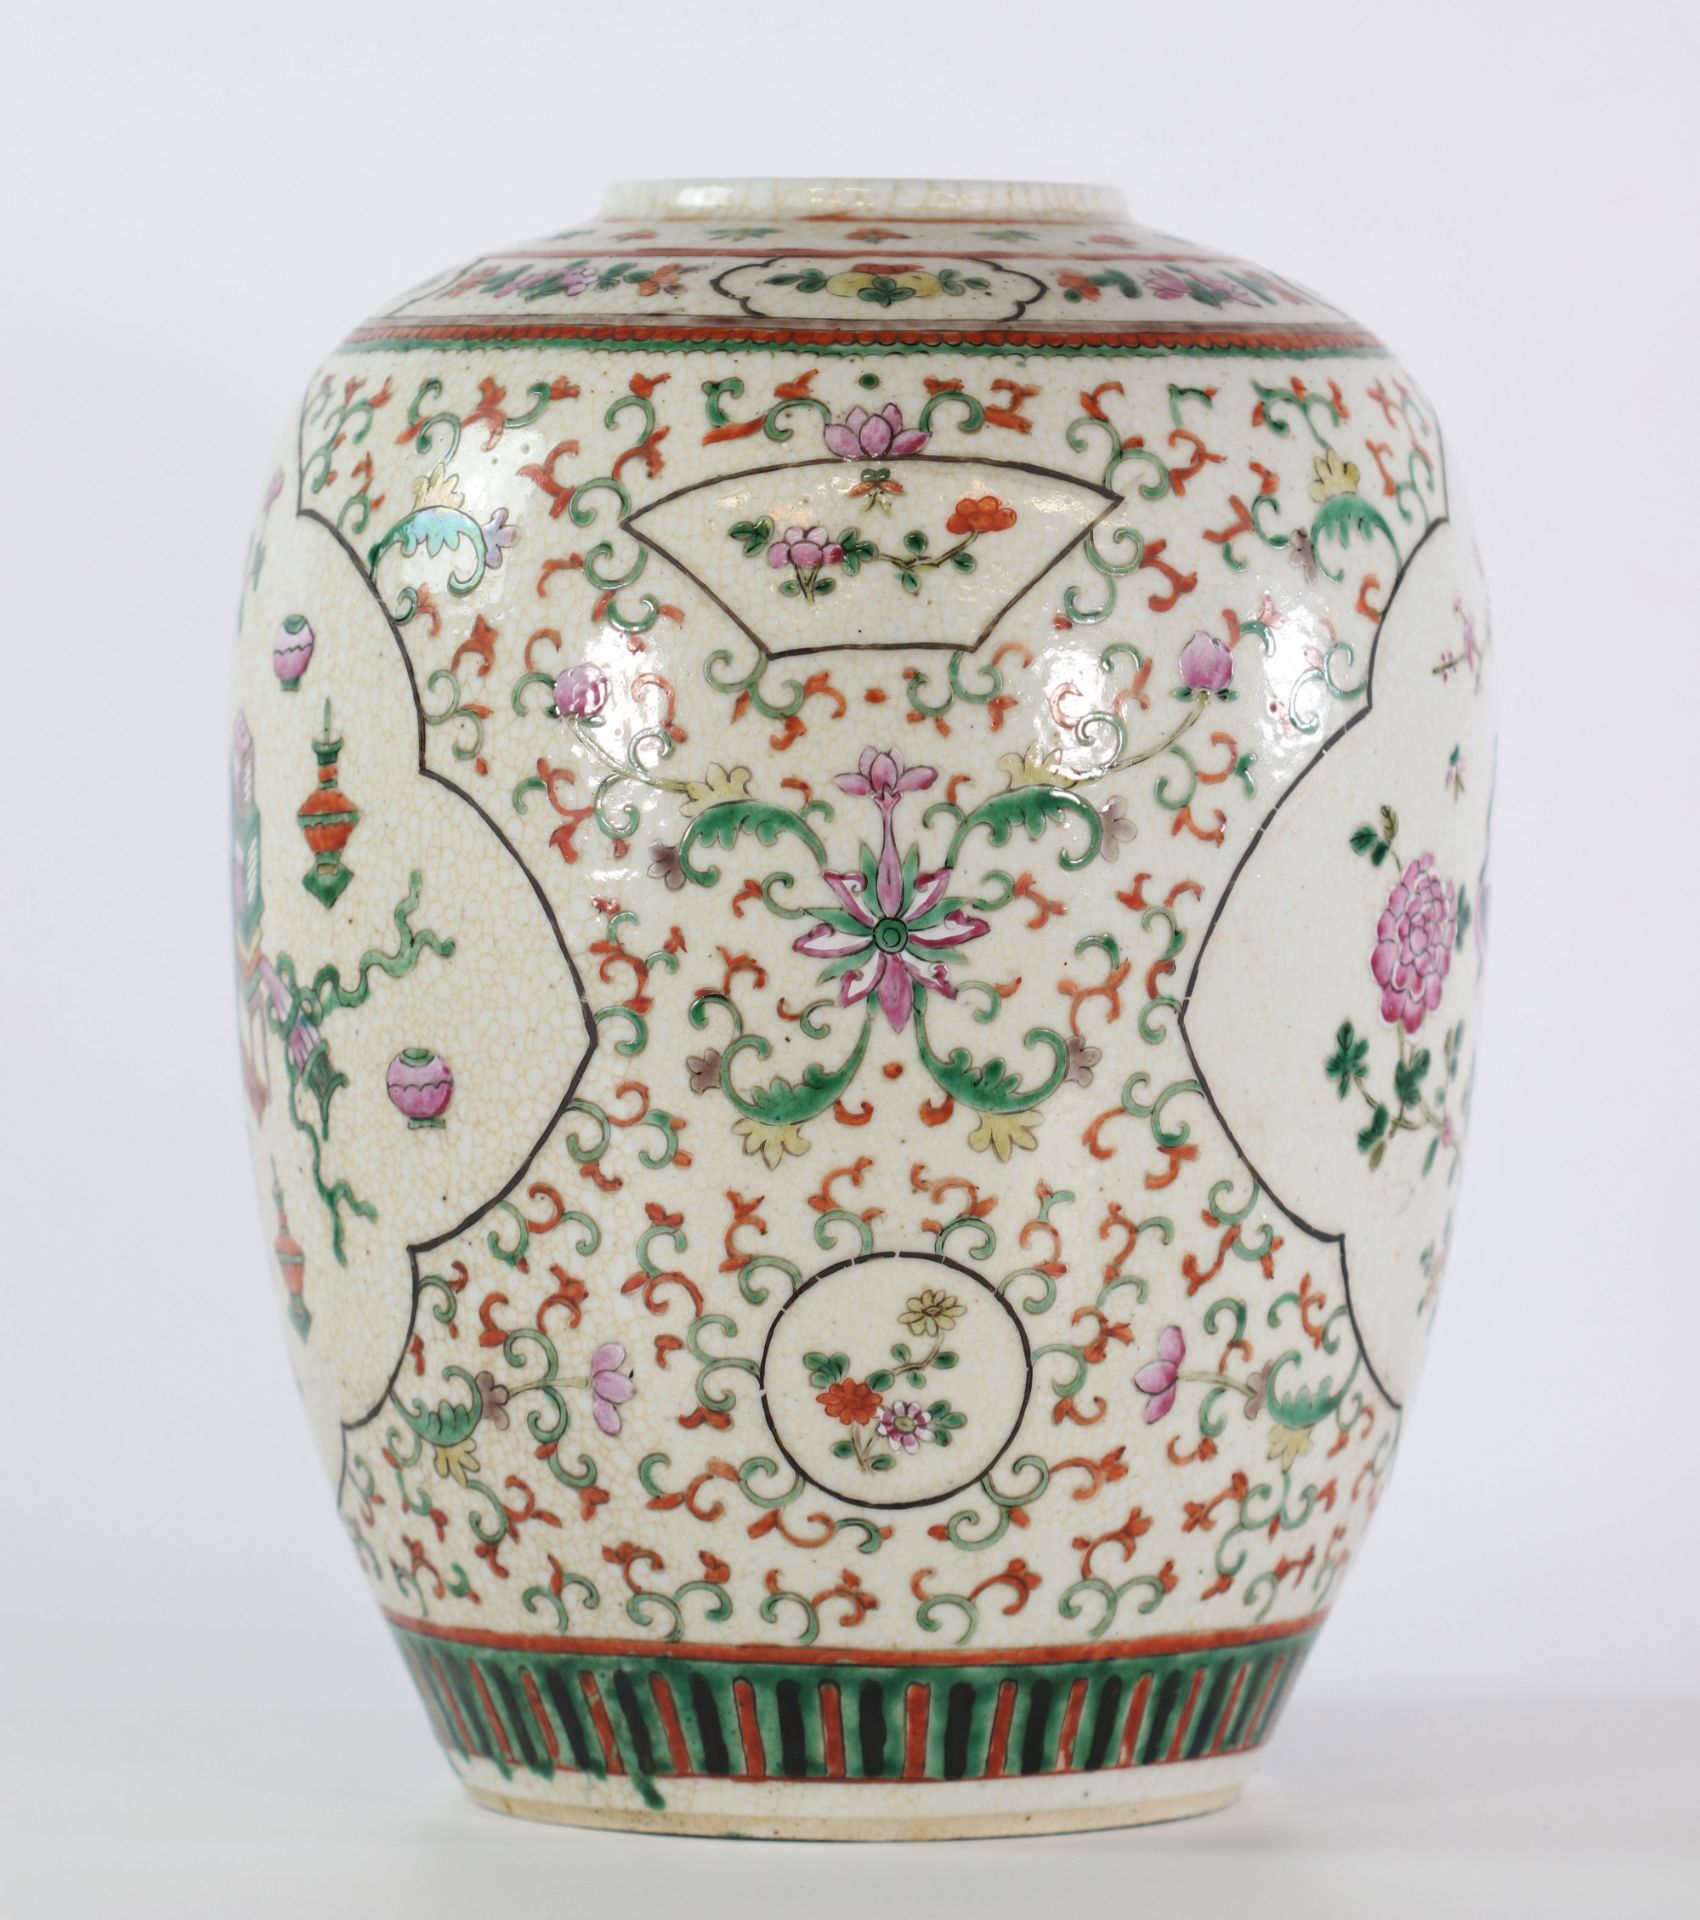 China cracked porcelain vase 19th century furniture decor - Image 2 of 5